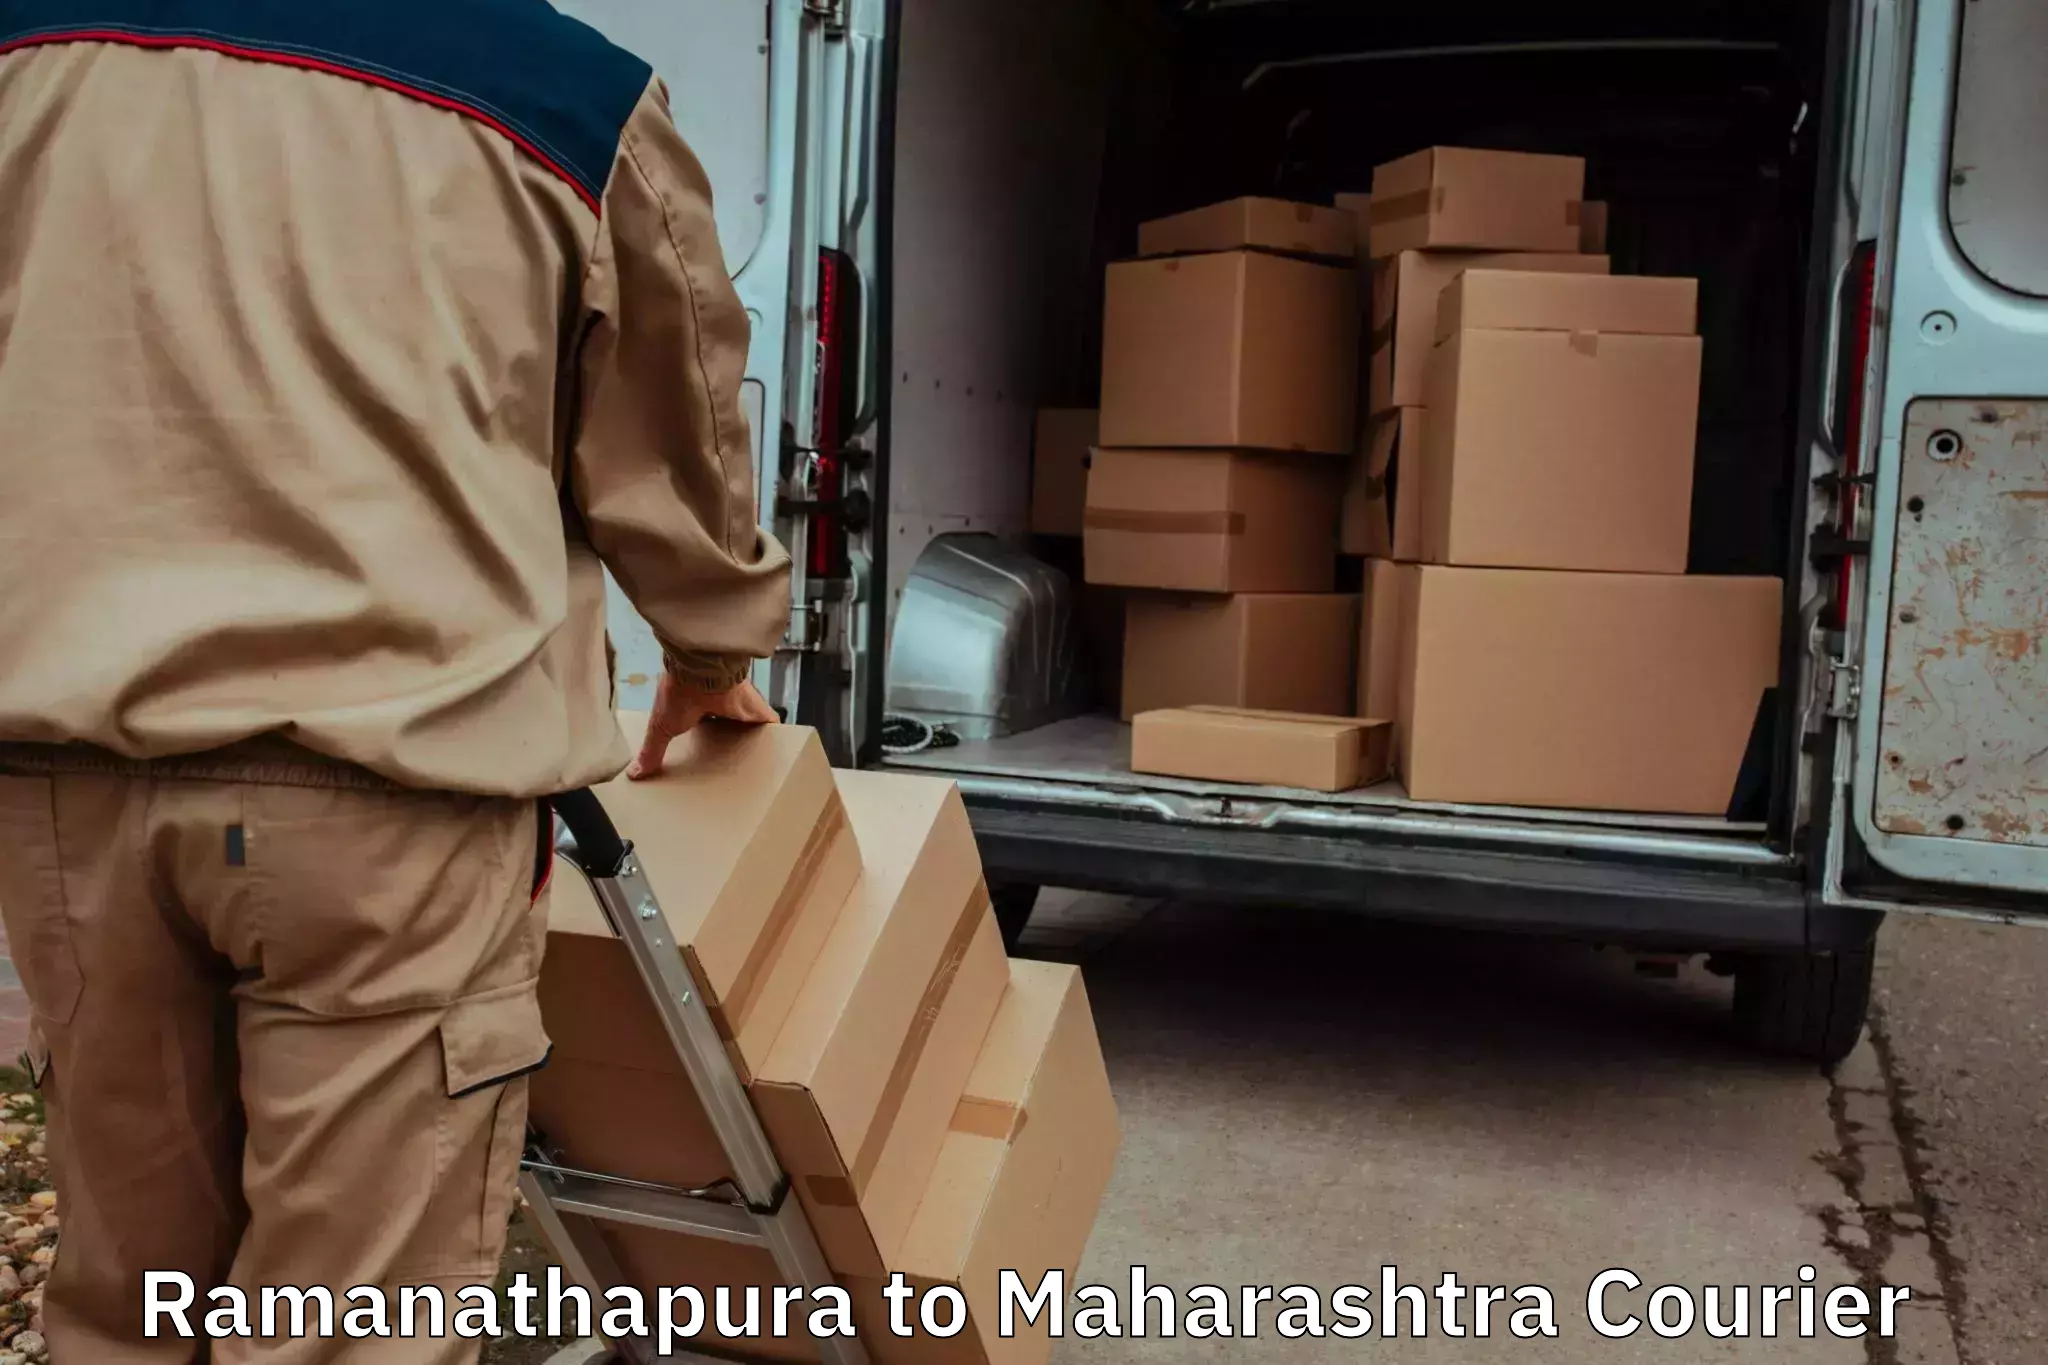 Expert goods movers in Ramanathapura to Khandala Pune